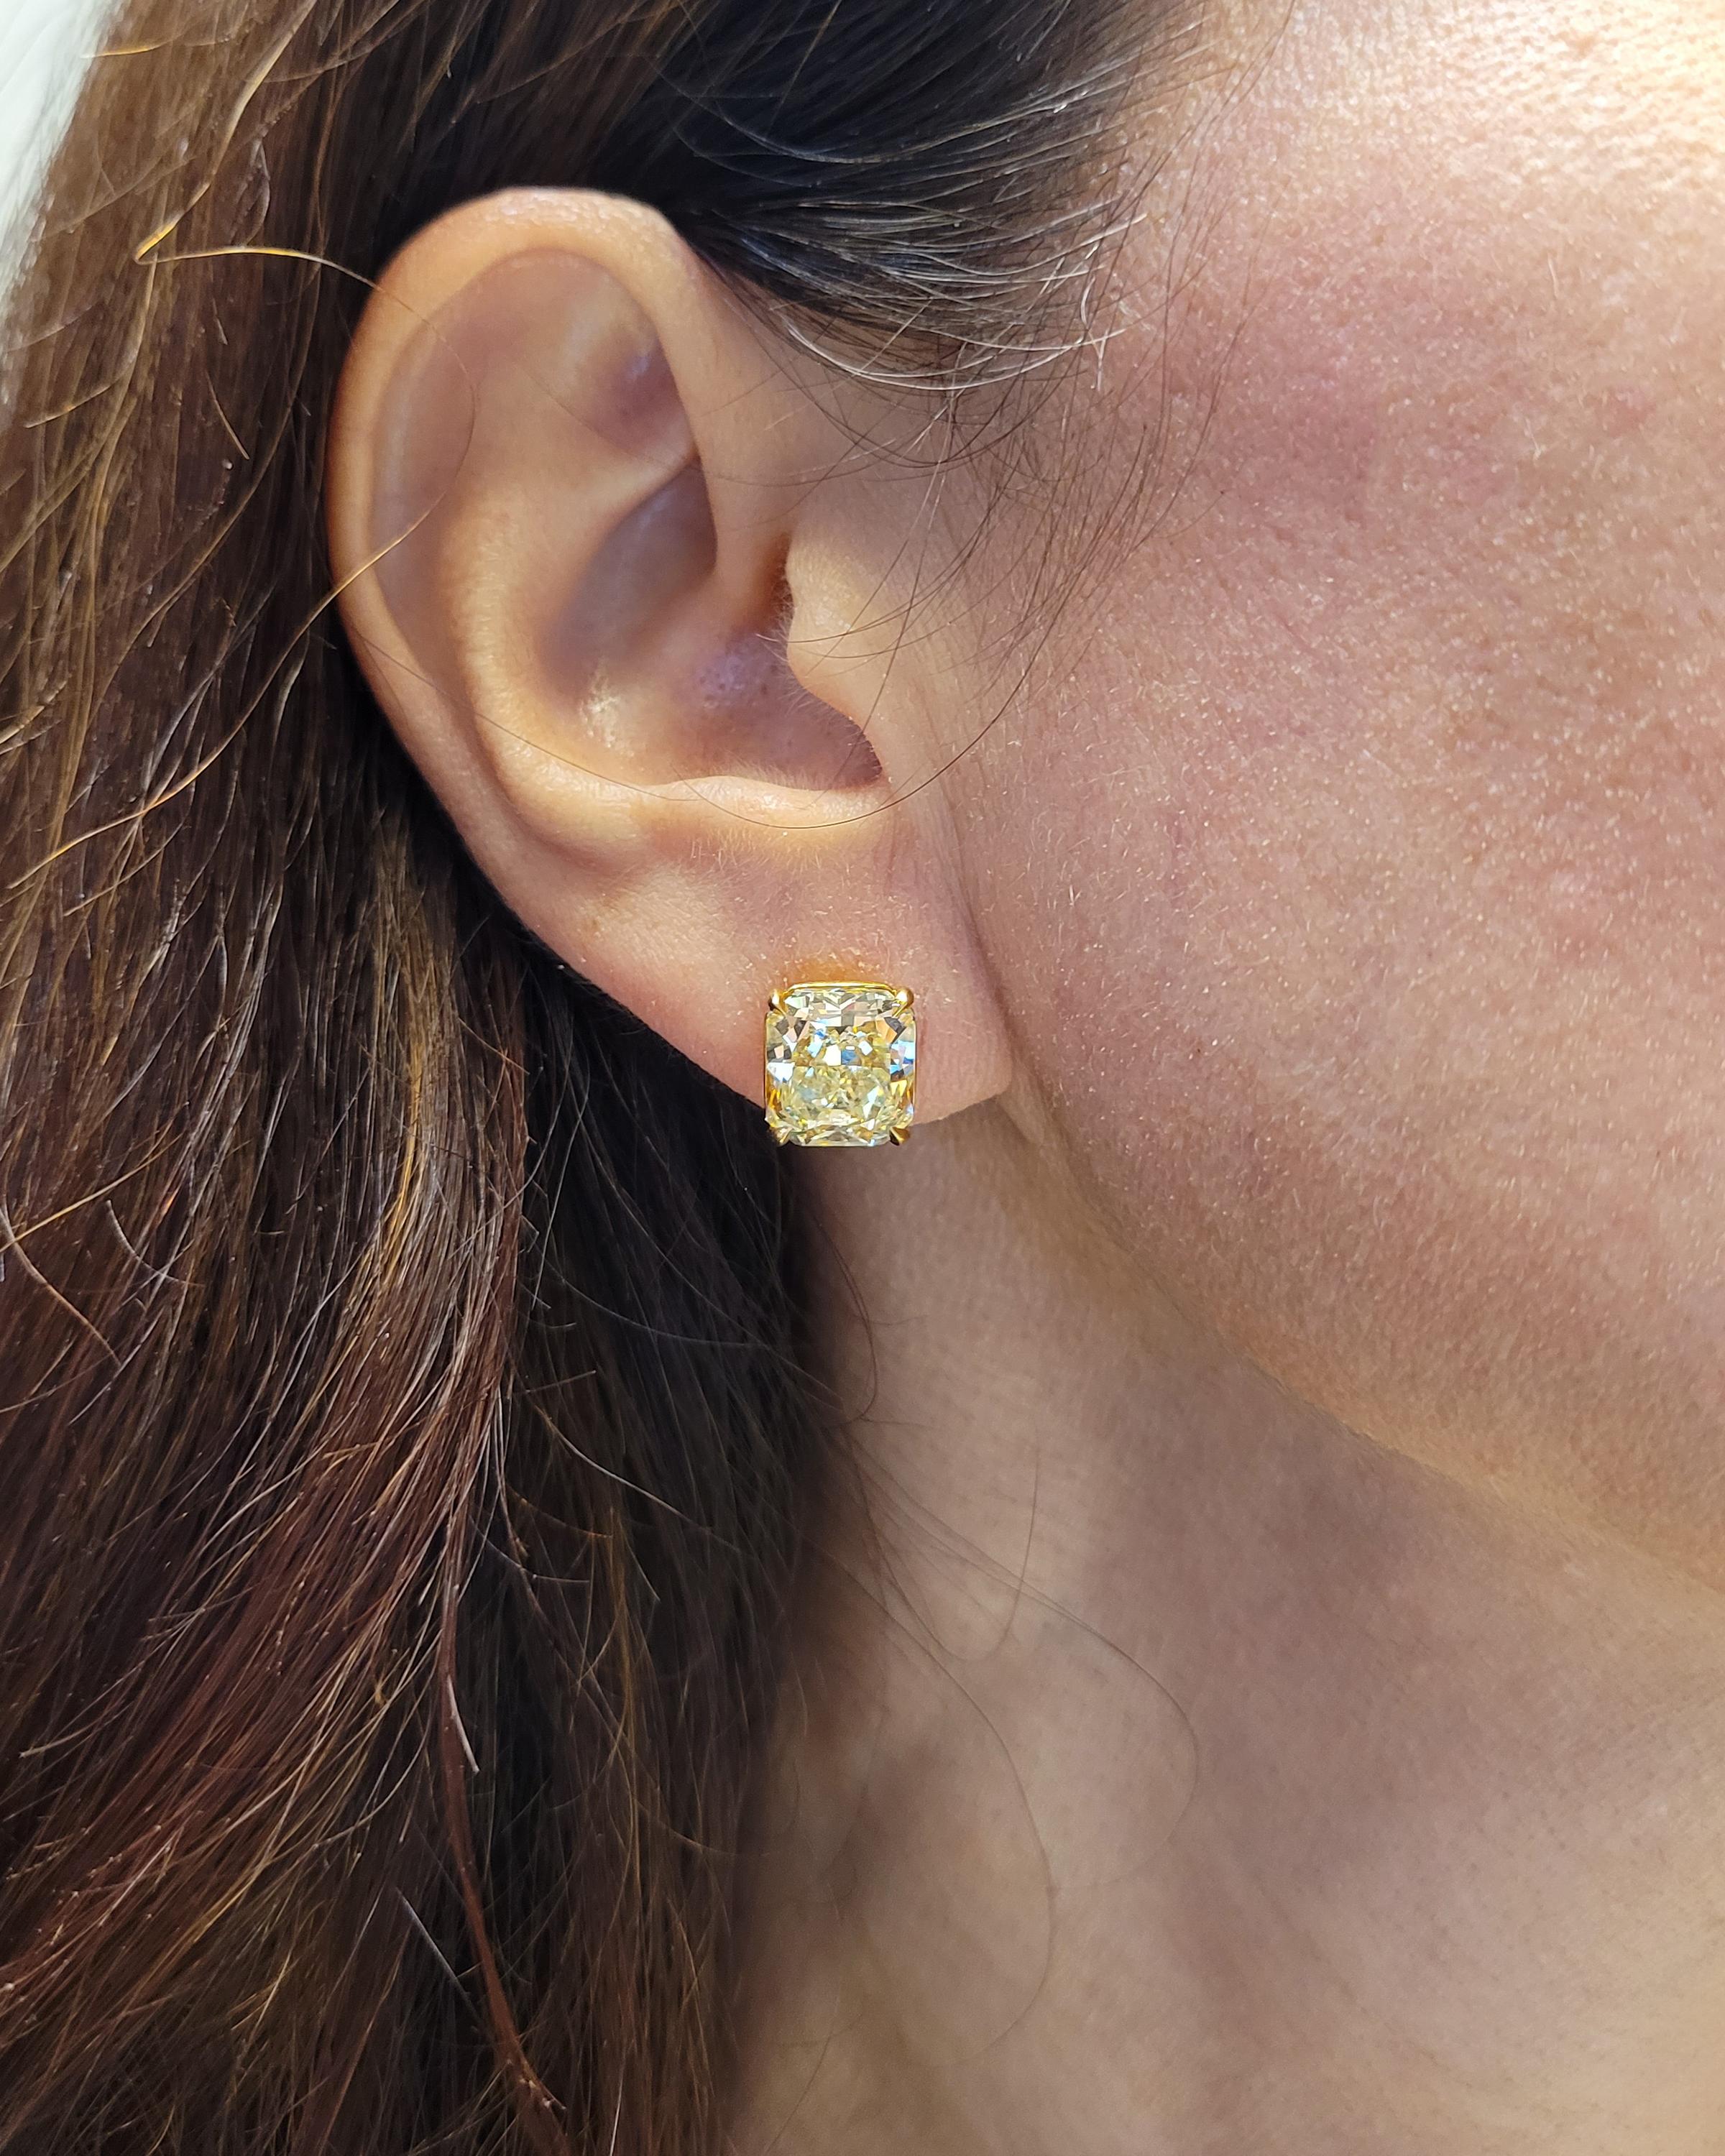 Erhöhen Sie Ihre Eleganz mit diesem außergewöhnlichen Paar gelber Fancy-Diamant-Ohrstecker, ein wahrer Beweis für die Anziehungskraft strahlender Diamanten und die exquisite Handwerkskunst feiner Juwelen. Diese Ohrringe sind aus glänzendem